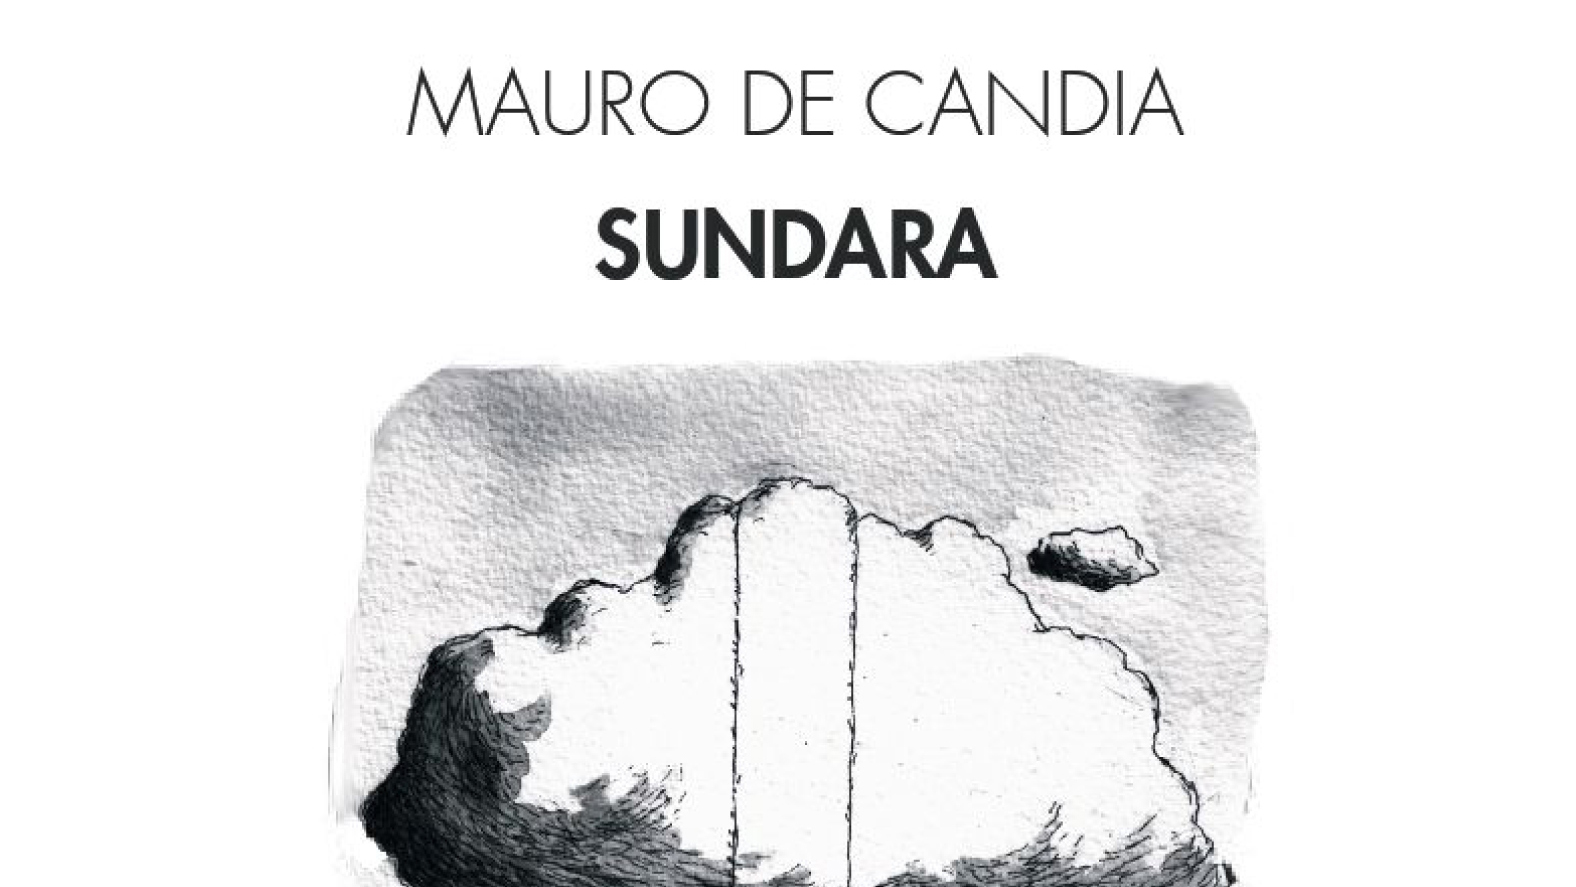 Sundara Mauro De Candia